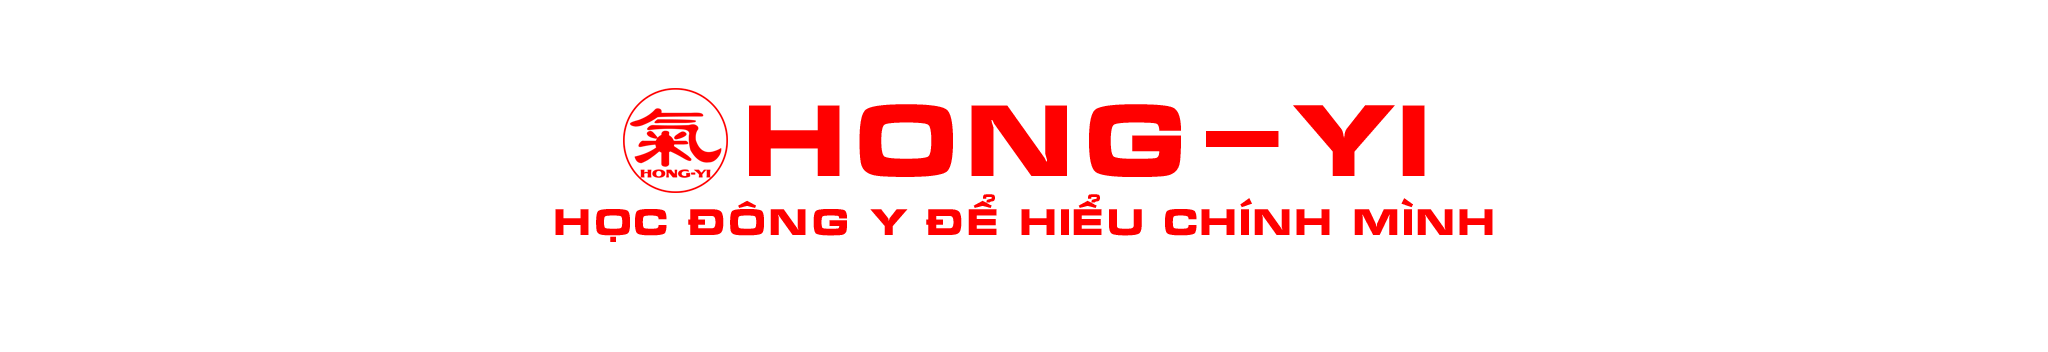 HONG-YI 99VN